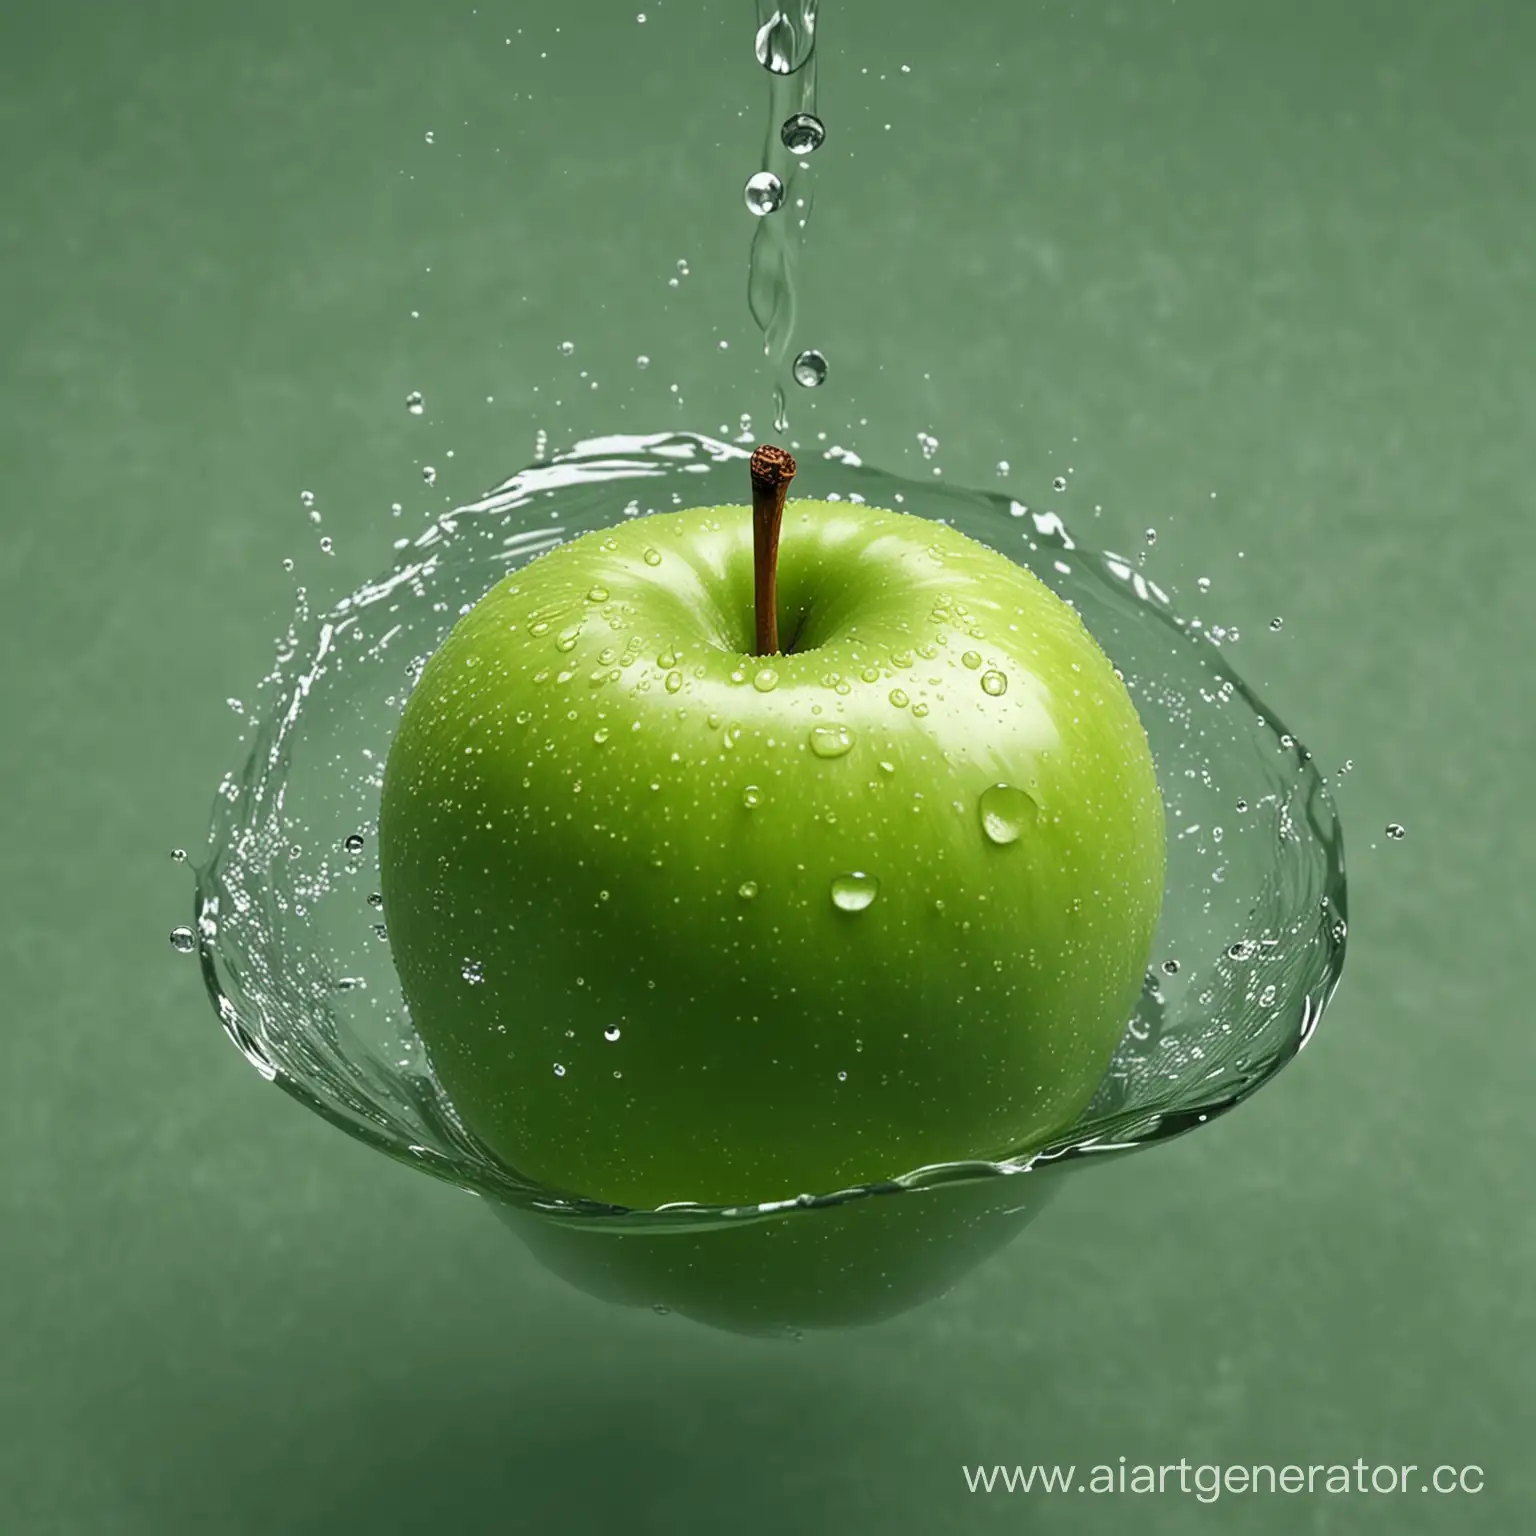 зеленое яблоко в воде 1920 на 1080